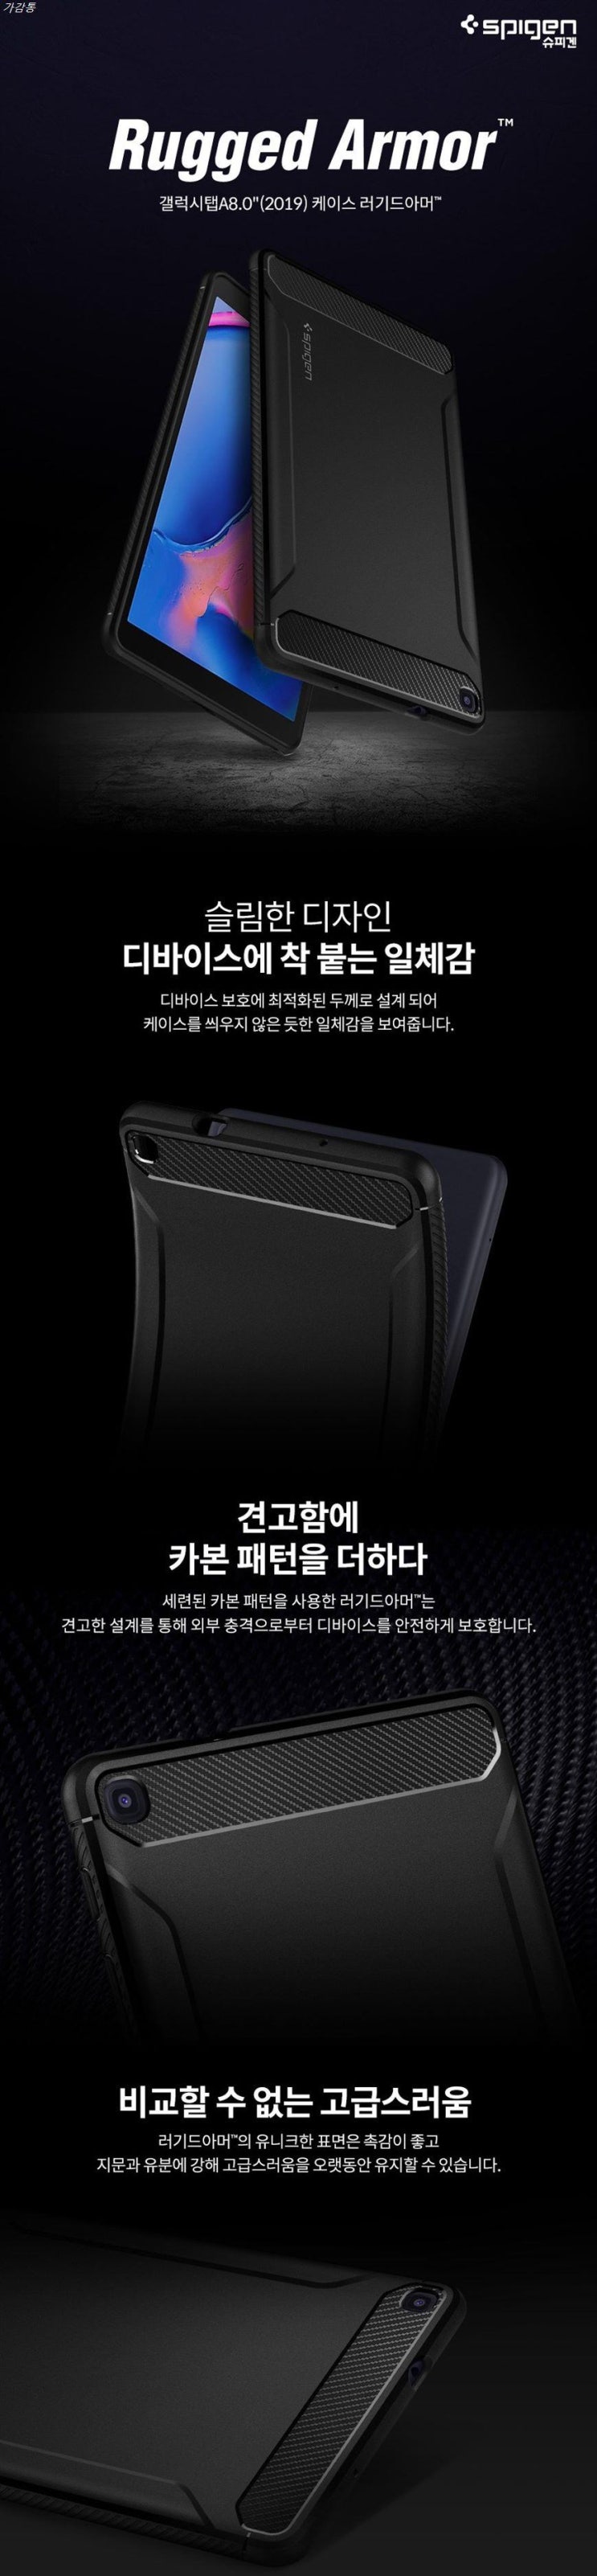 쇼핑 제품 슈피겐 2019 태블릿PC 케이스 S펜 러기드아머 ACS00048! 언박싱?